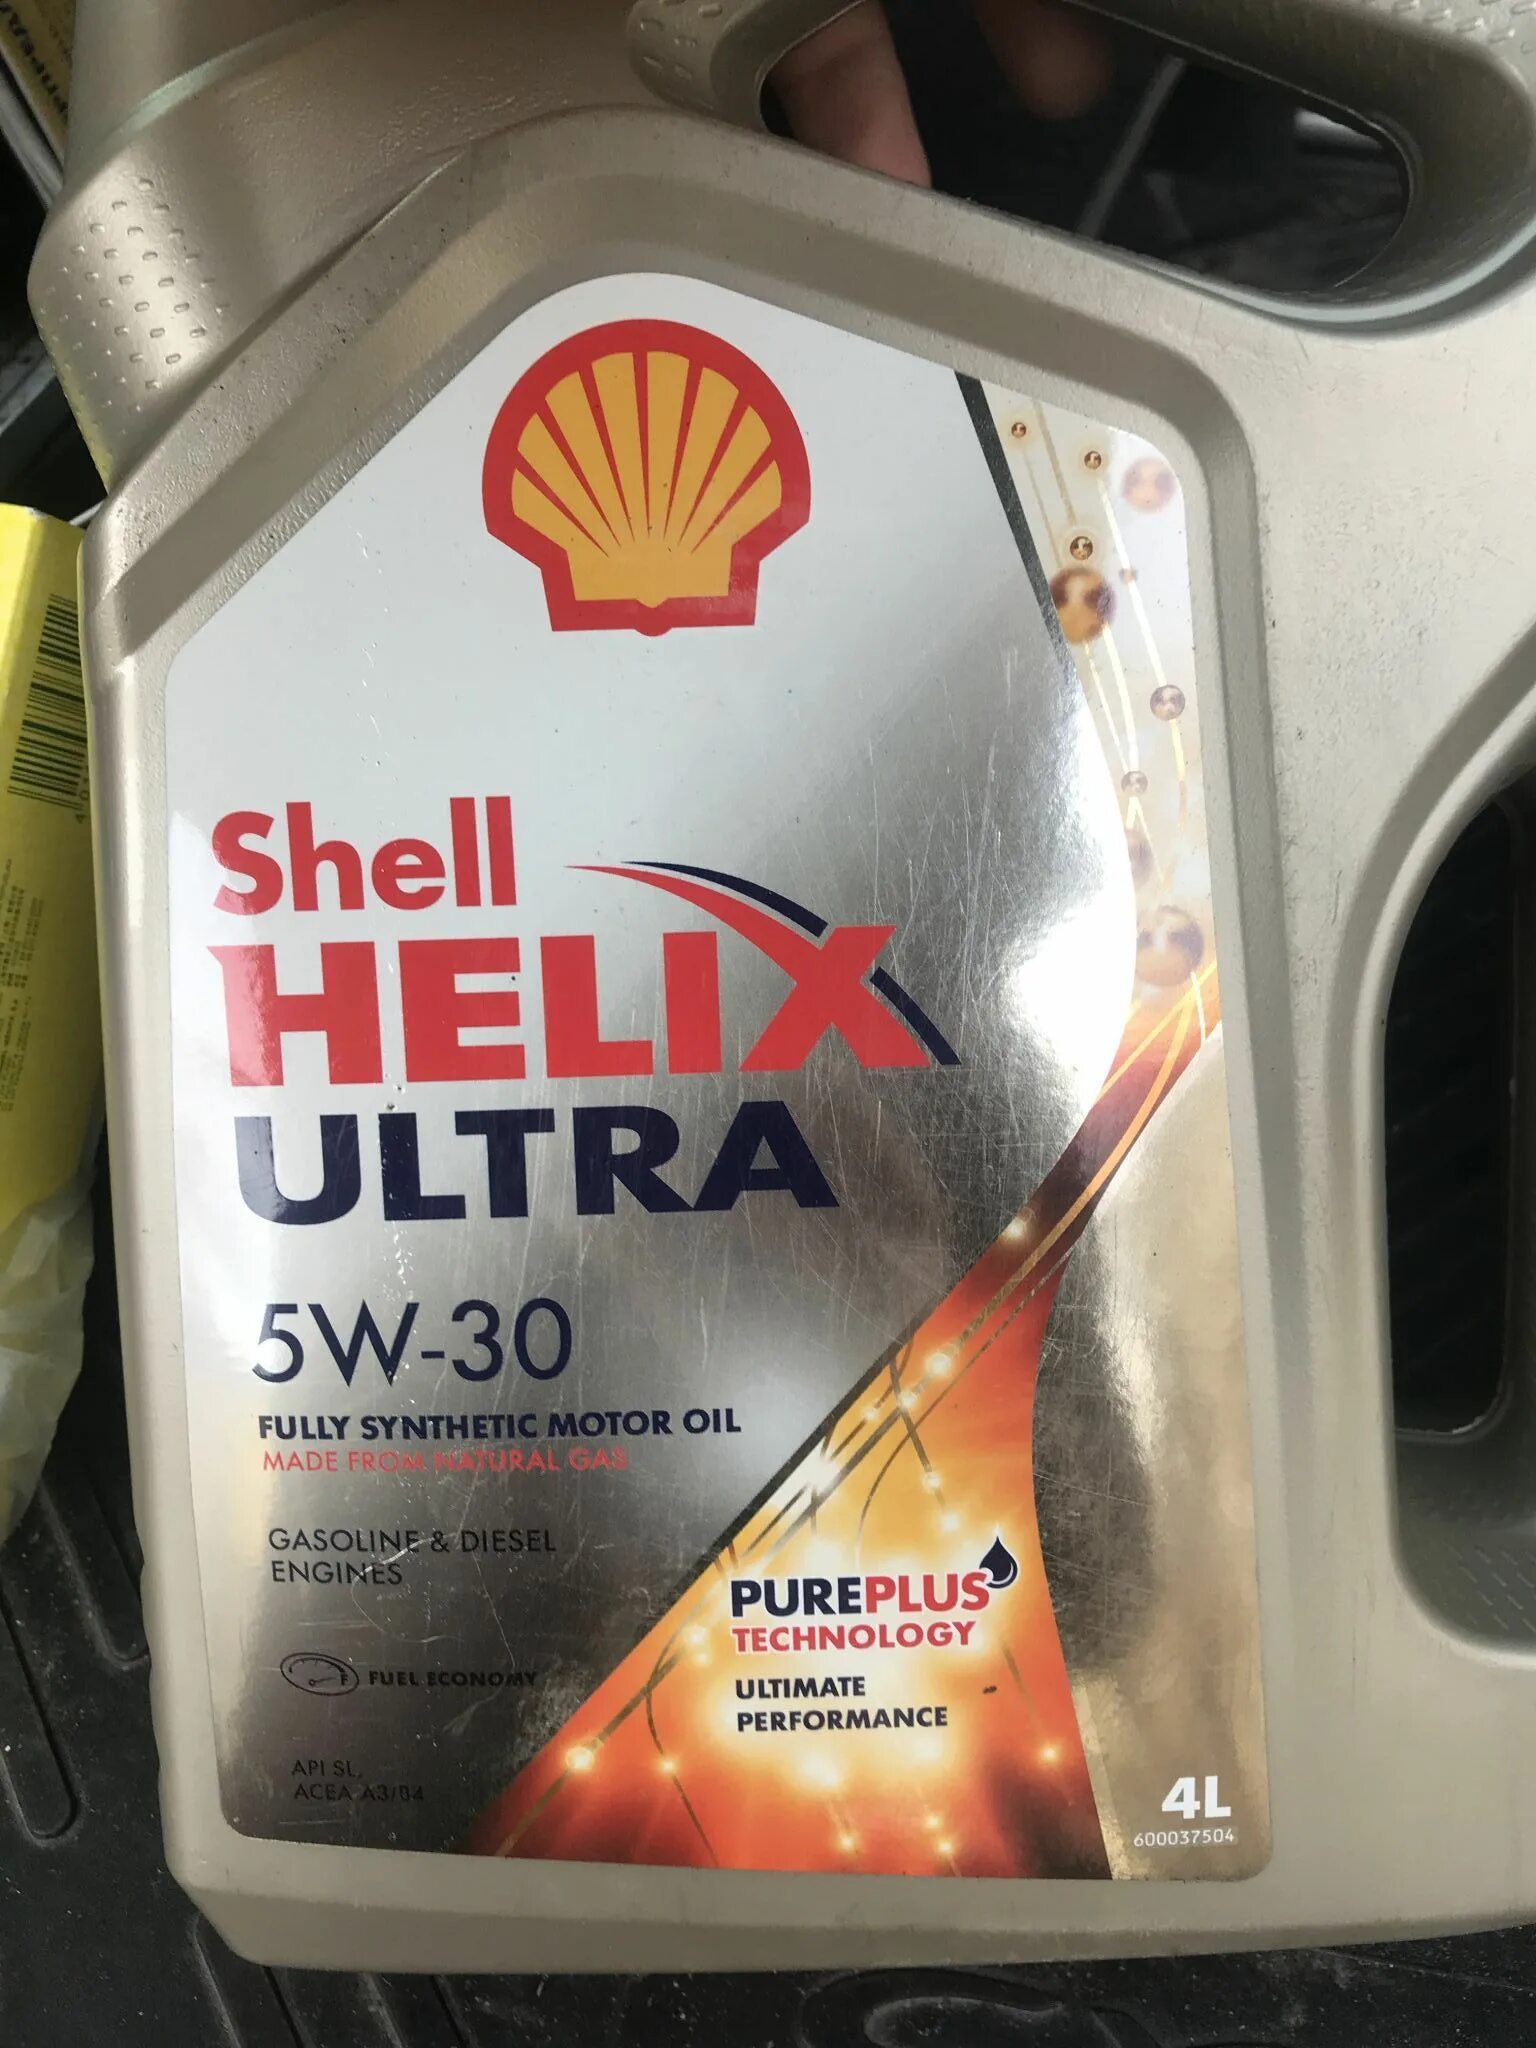 Shell 5w30 Хендай. Масло моторное Шелл Хеликс ультра 5w30. Shell Ultra 5w30 SL. Масло моторное 5w30 синтетика Шелл Хеликс. Масло shell 5 в 30